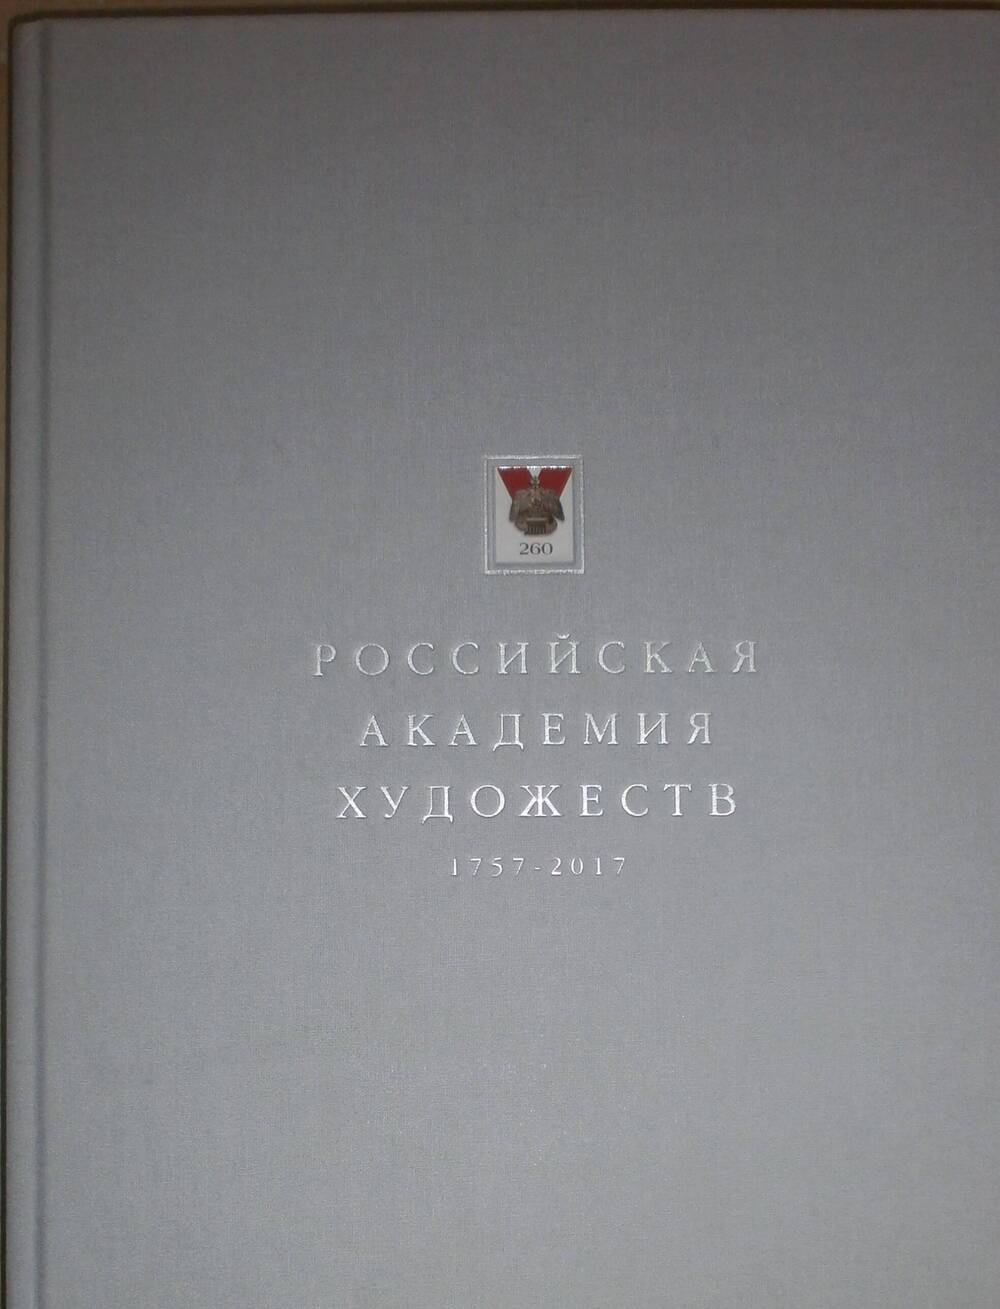 Юбилейное издание 260-летию Российской академии художеств